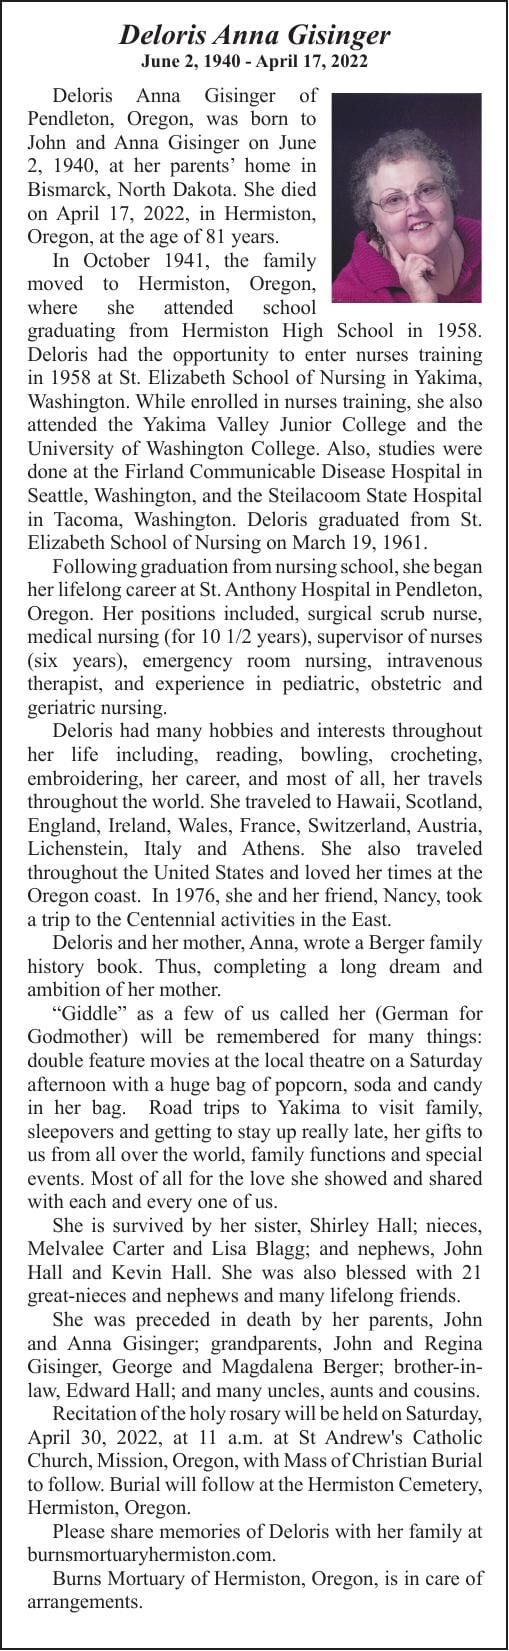 Obituary: Deloris Anna Gisinger, June 2, 1940 - April 17, 2022